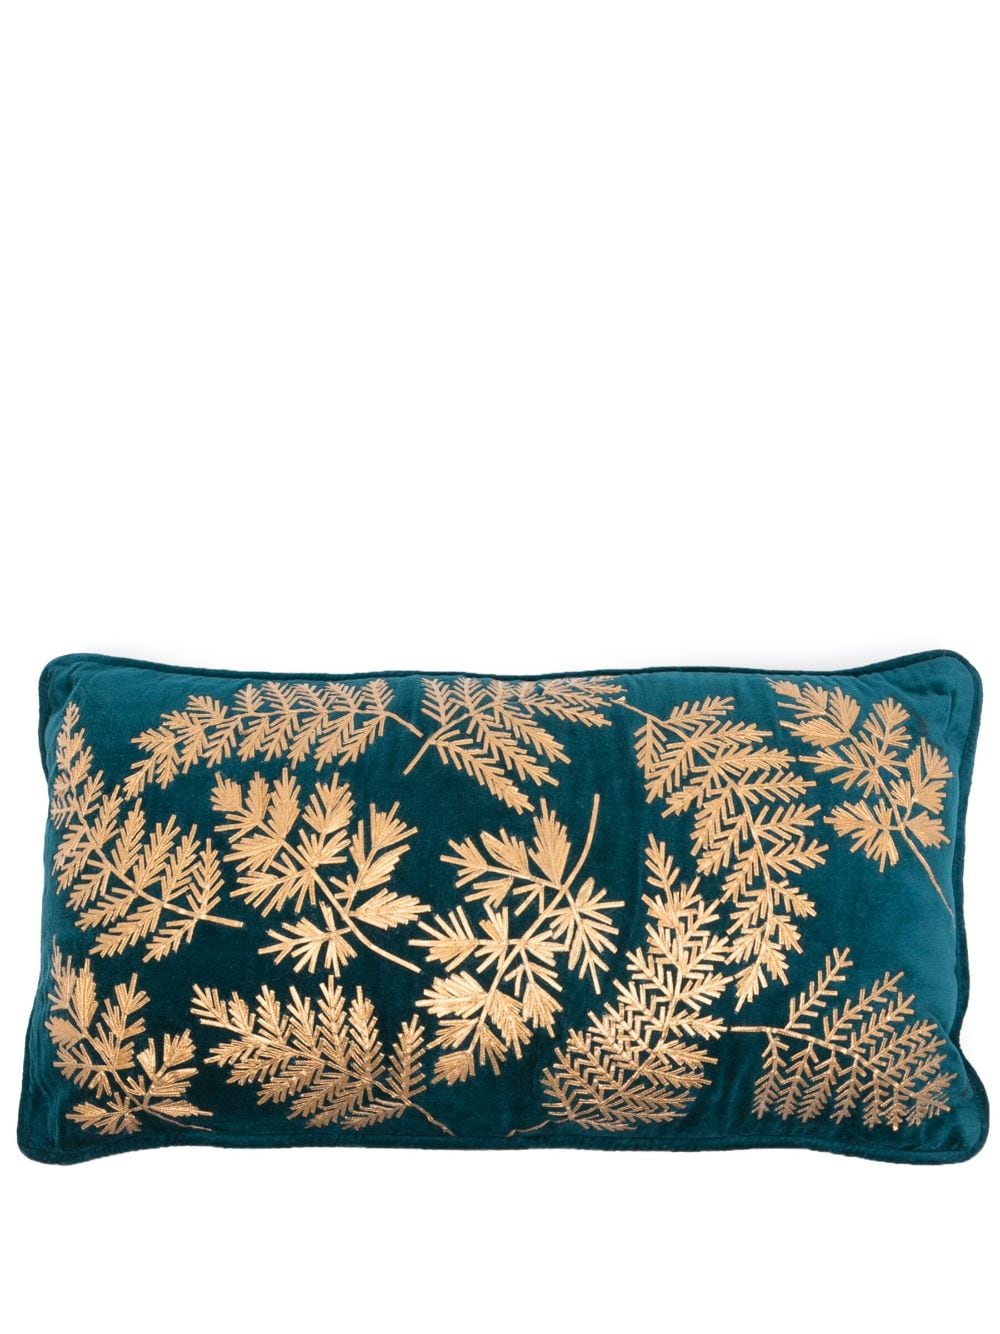 Les-Ottomans x Browns leaves-embroidered velvet cushion (30cm x 60cm) - Blue von Les-Ottomans